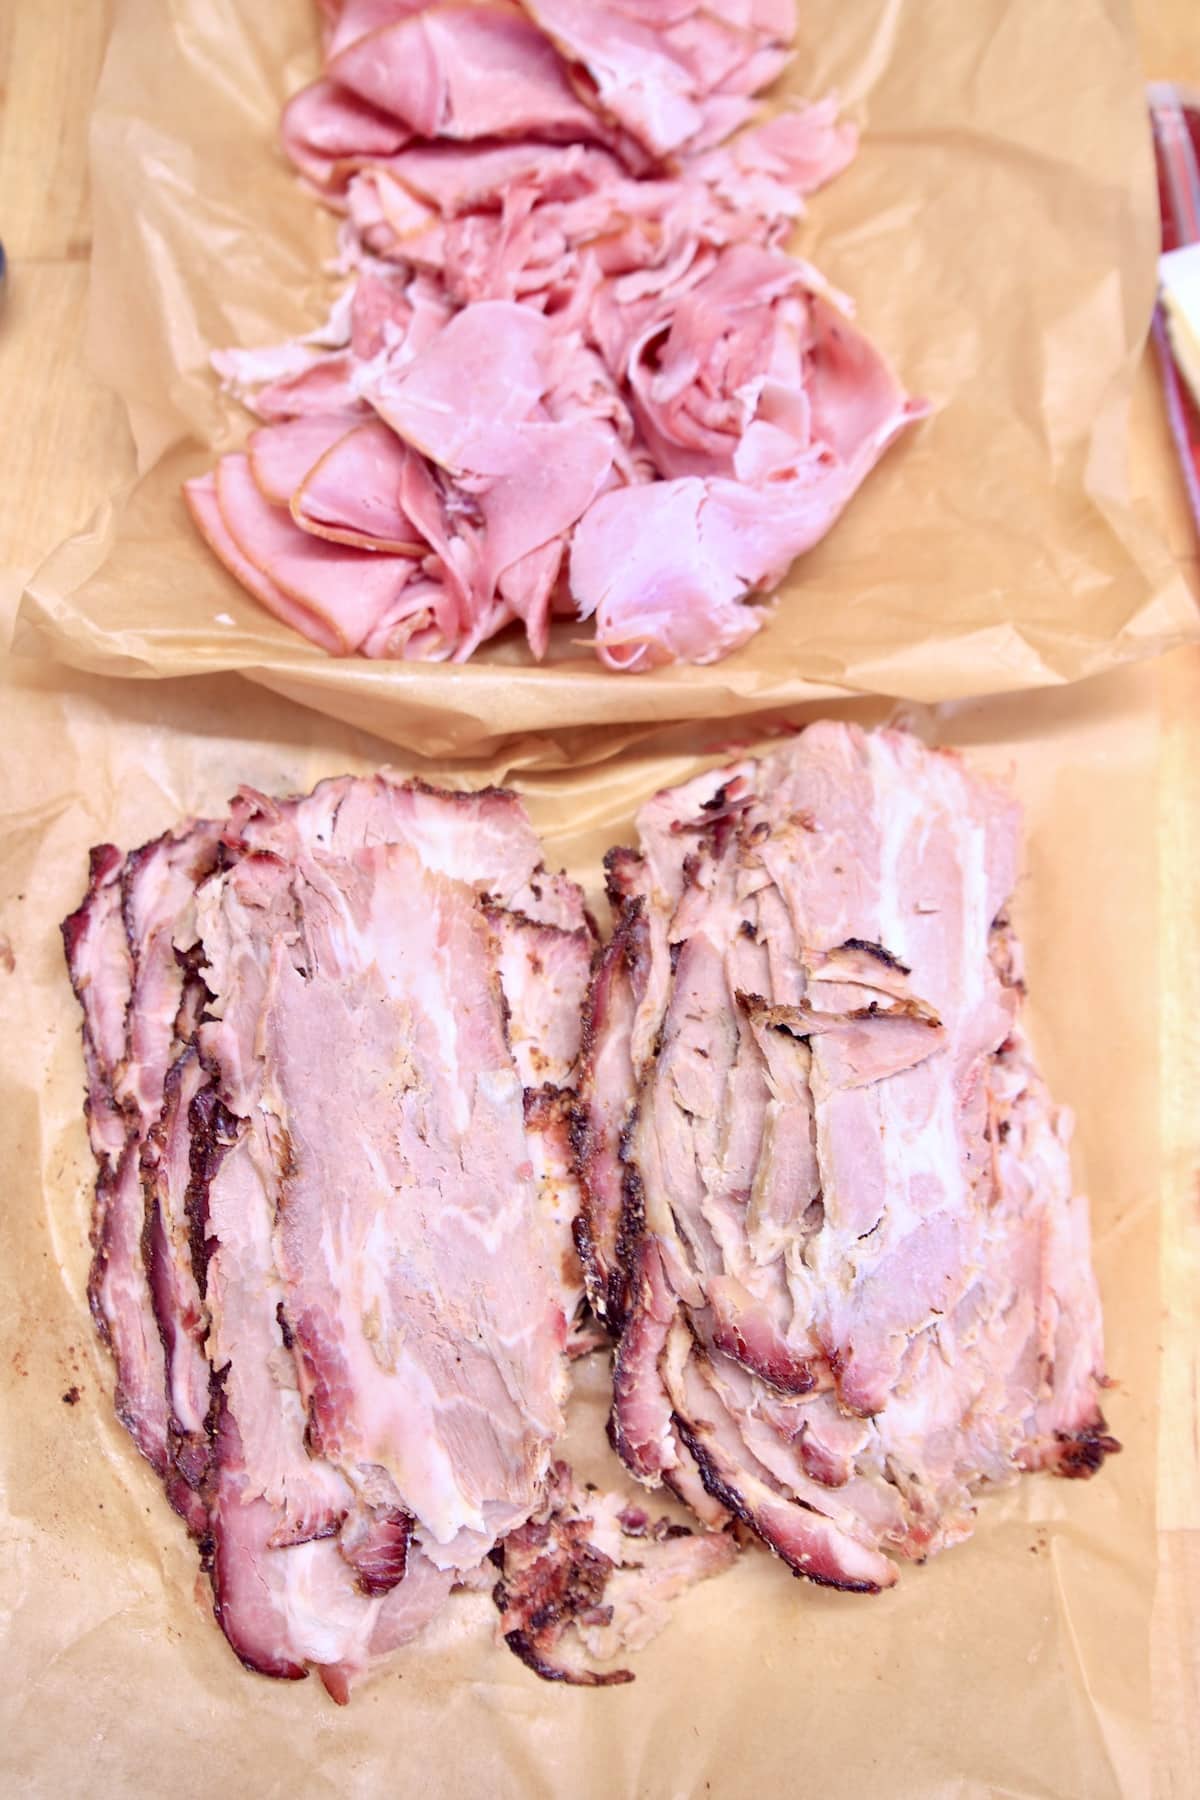 sliced ham and pork shoulder on parchment paper.